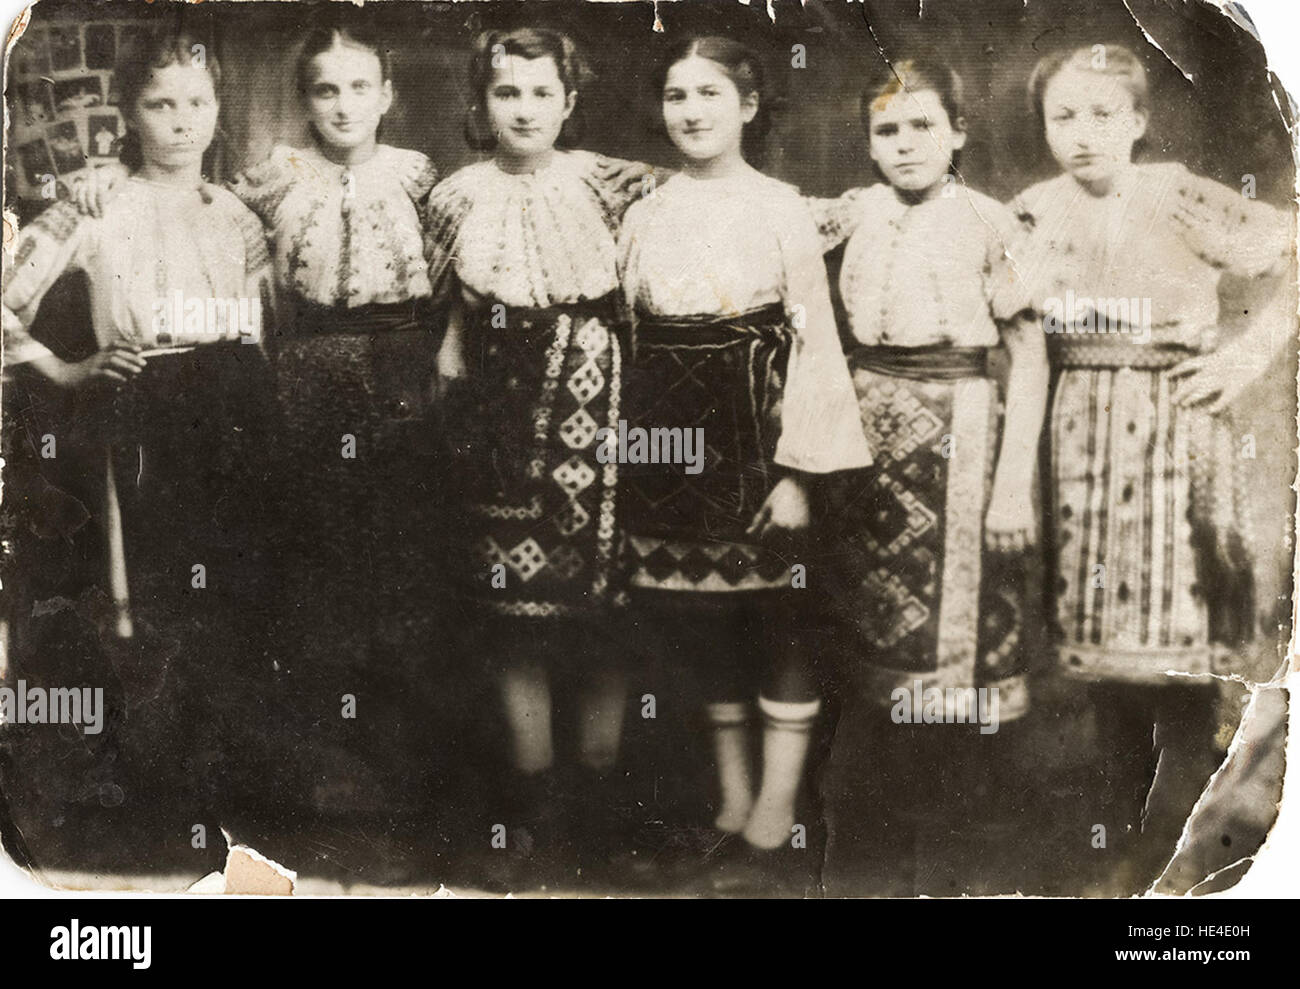 Hoinaru Ilia, Zaharia Maria, Sârbu Victoria, Aurelia Badea, Constantinescu Fla[?] si Lemnaru Lina, 1944  din colecția personală Anca Danilescu Stock Photo